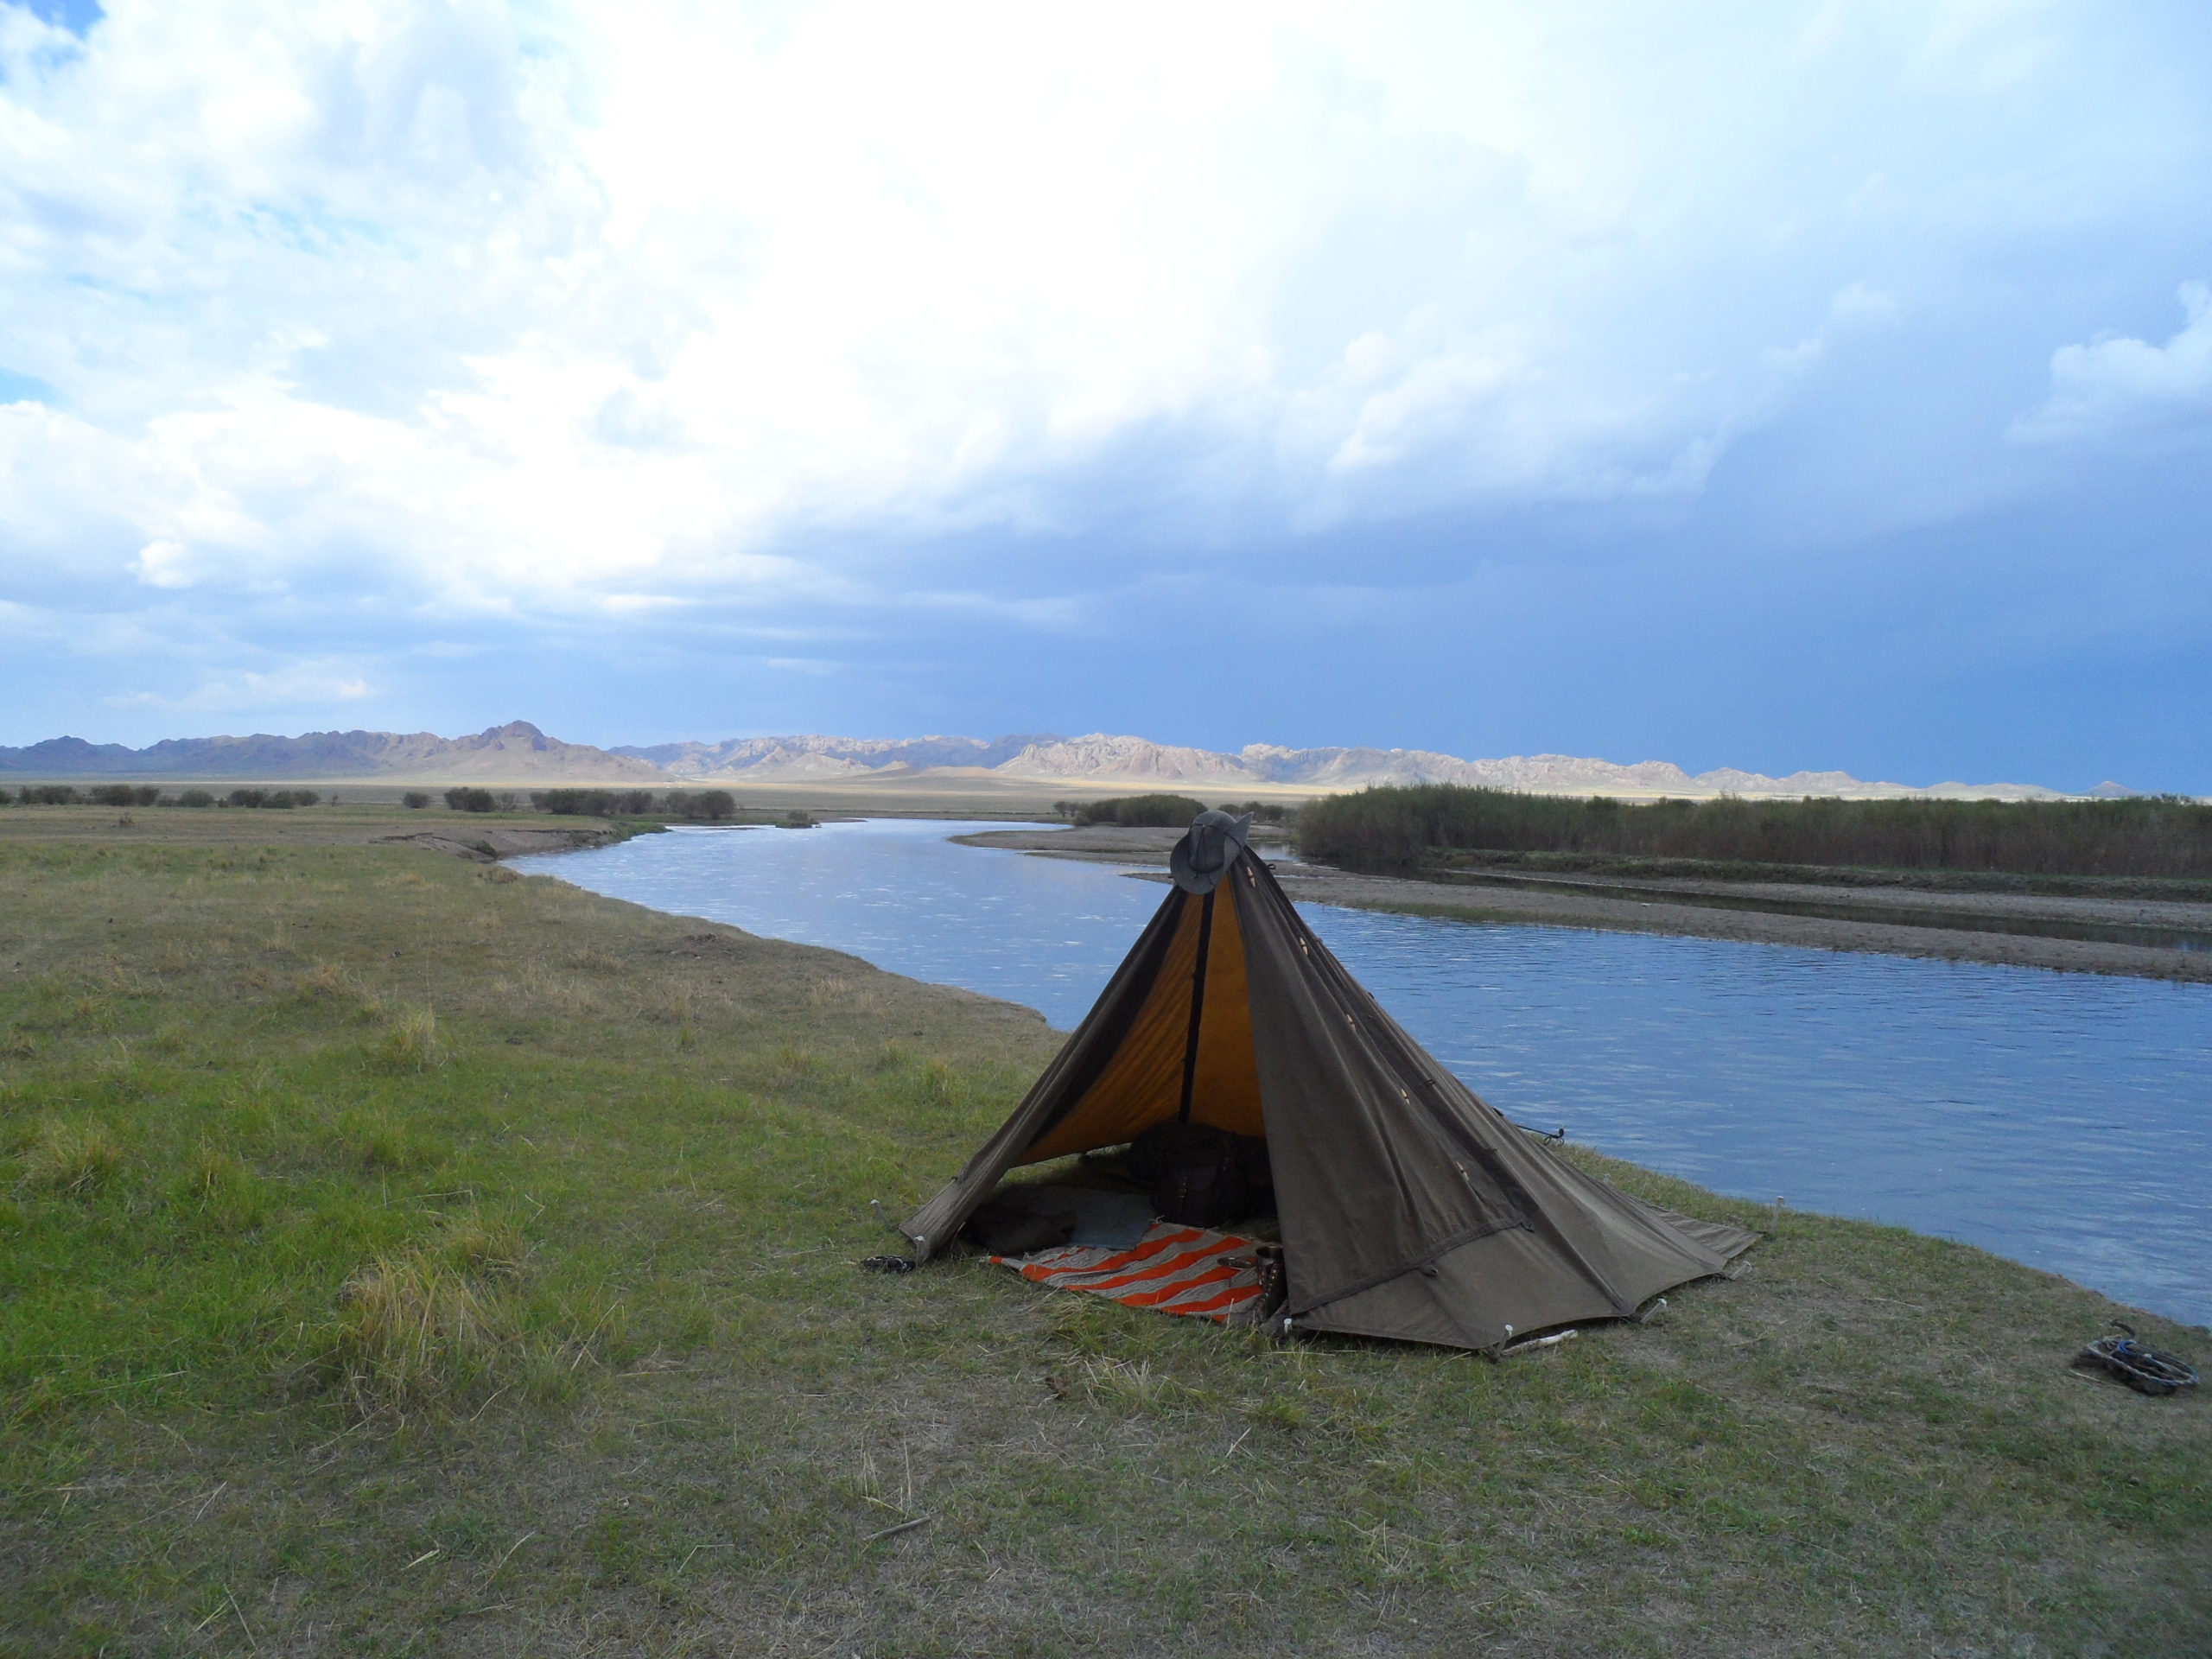 oilskin shelter on a flat landscape by a slow river